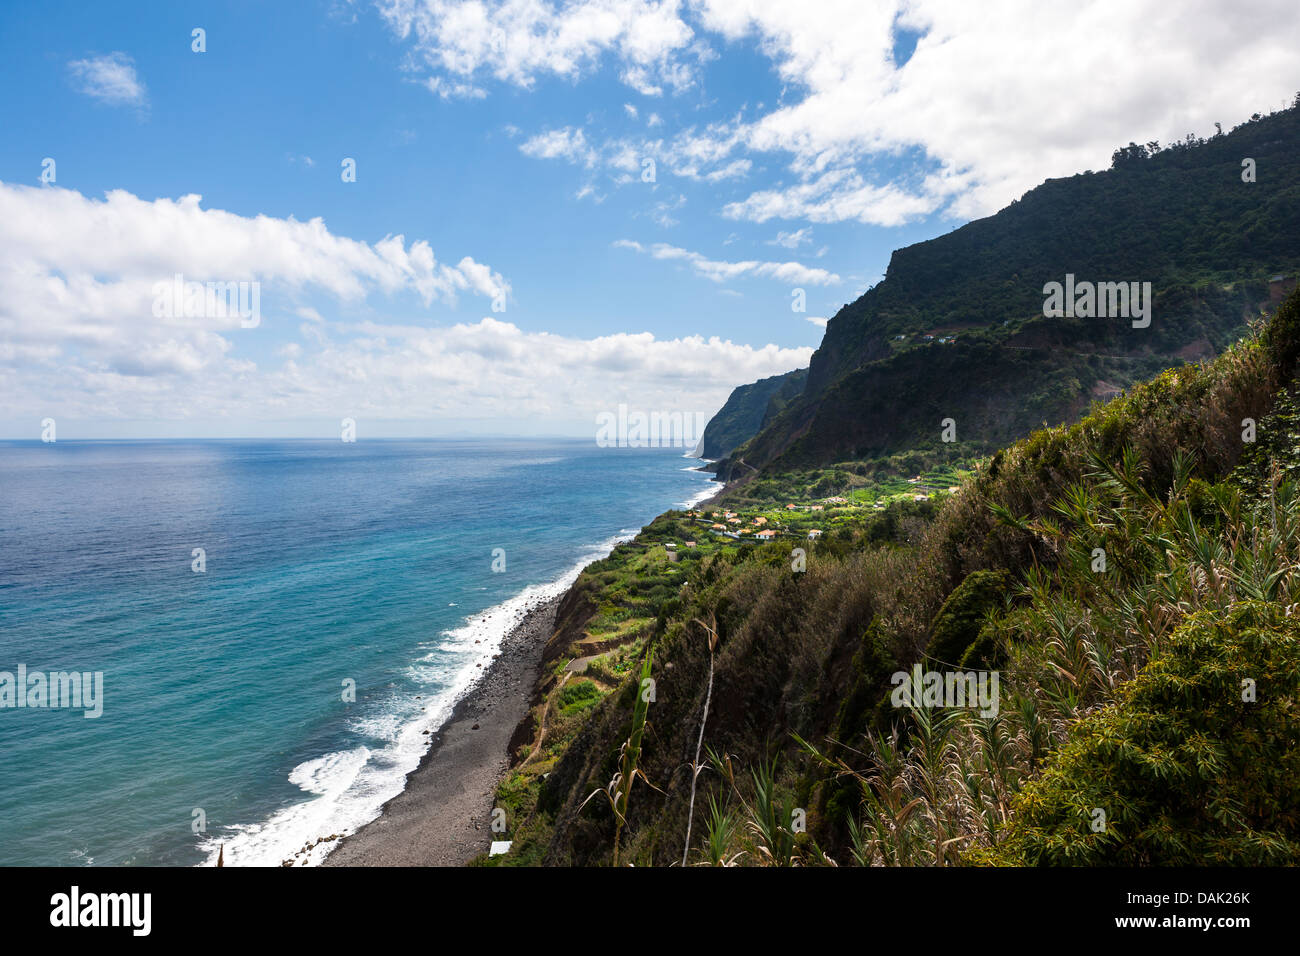 Portugal, Cliffs of Madeira at Arco de Sao Jorge Stock Photo